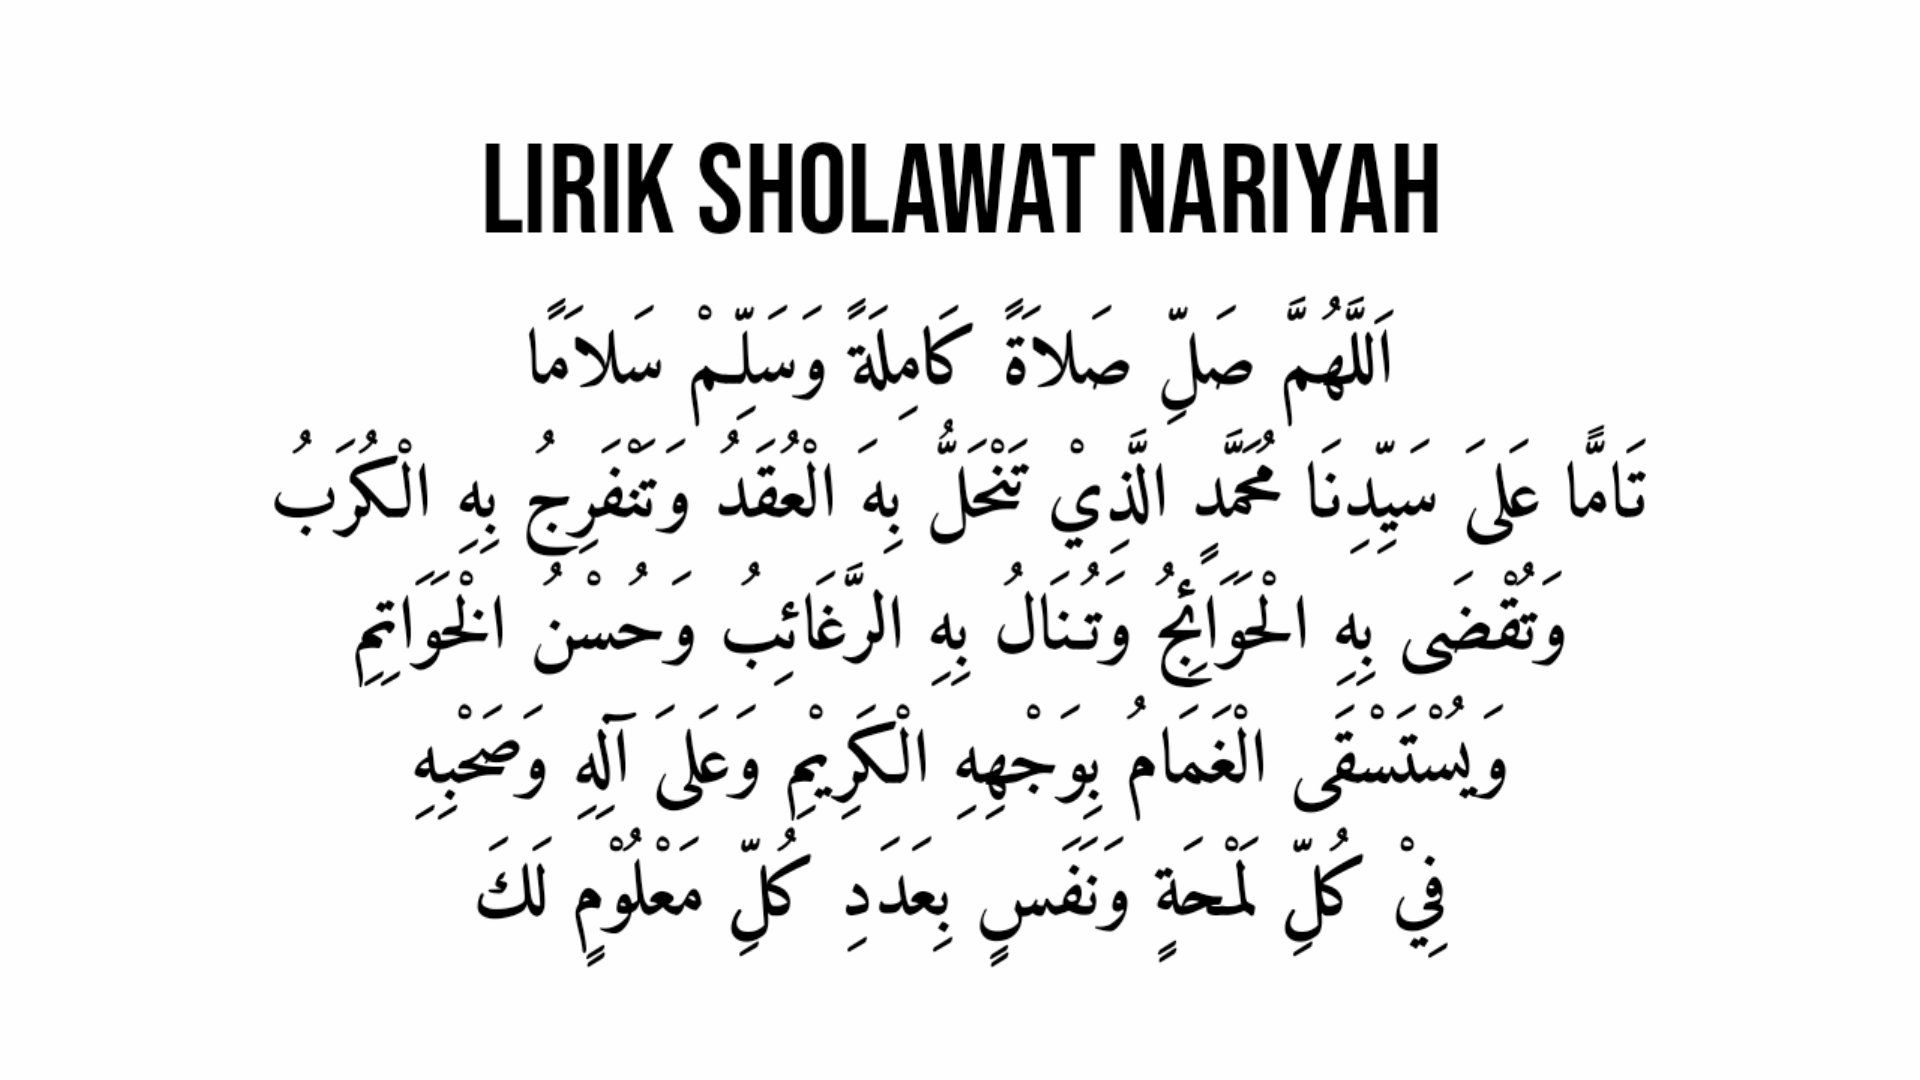 Lirik Sholawat Nariyah 